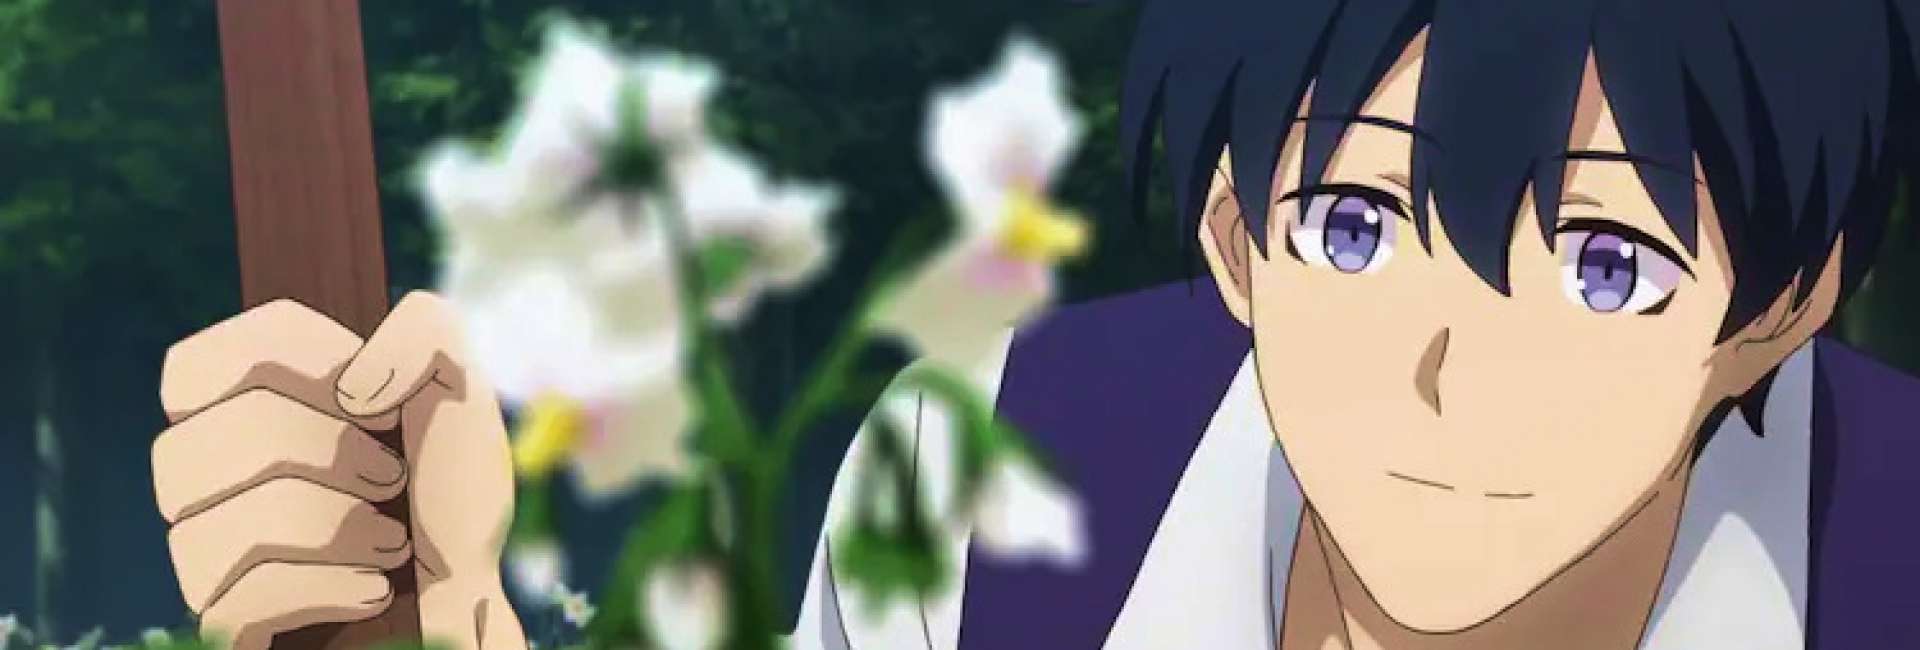 Hiraku admirando sua florzinha enquanto segura sua enxada